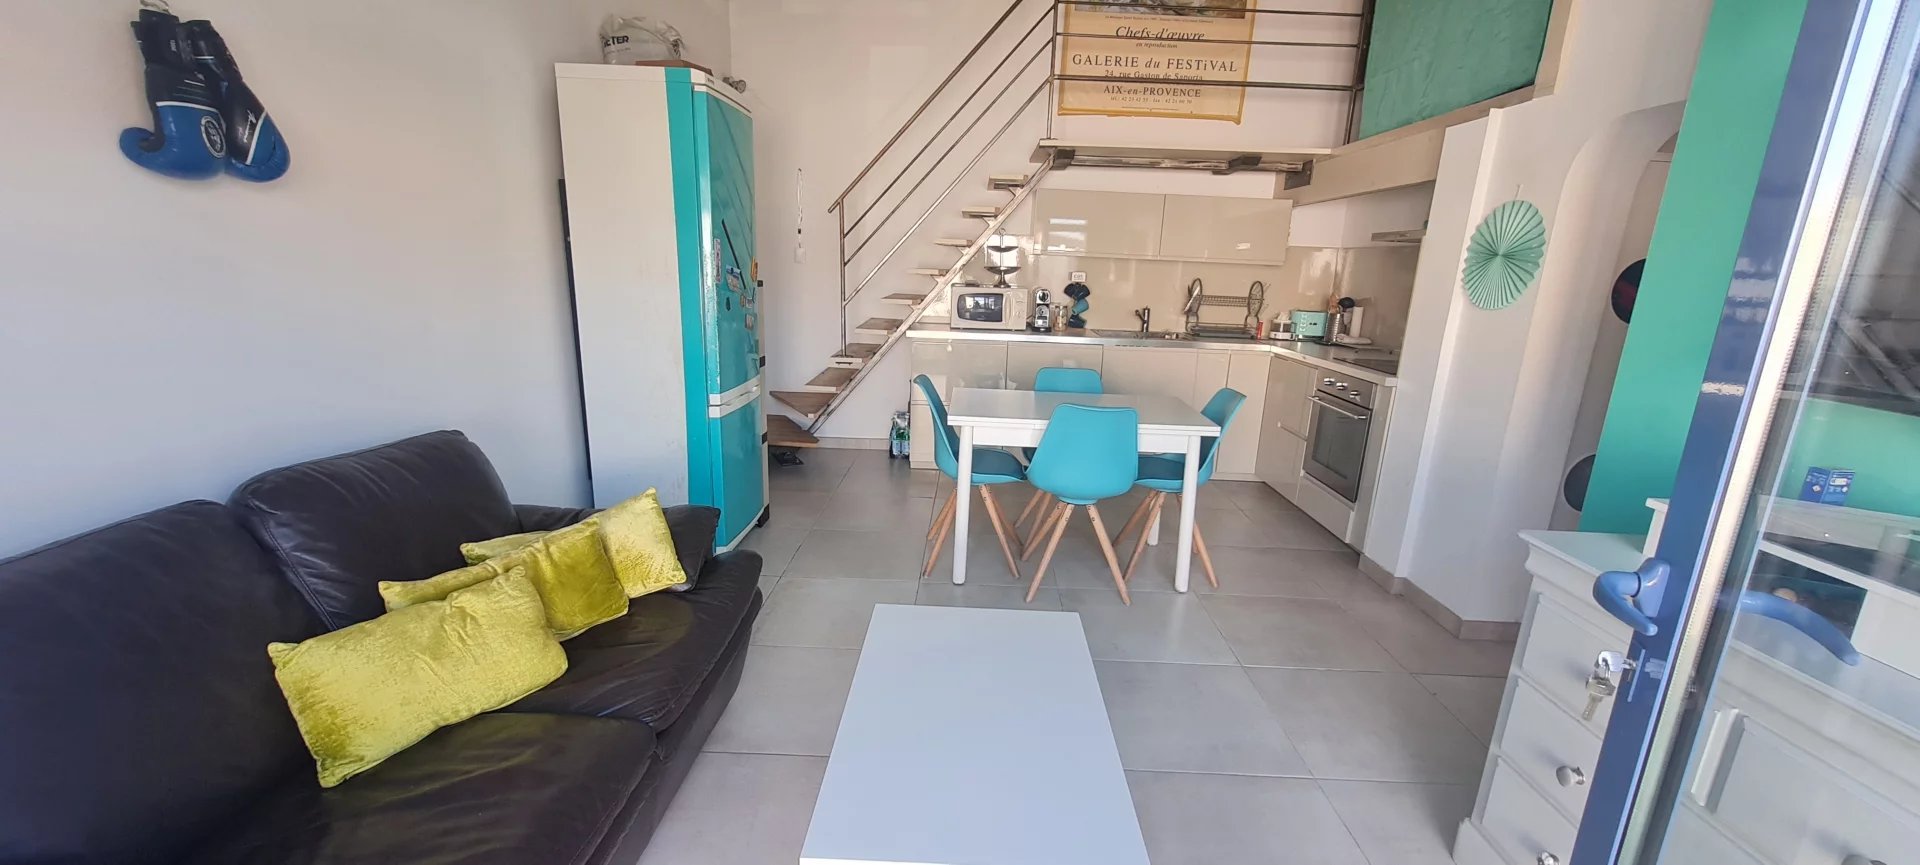 MAISON pour INVESTISSEUR ou REGROUPEMENT FAMILIAL MAISON 250 m² divisée en 4 appartements  entre Marseille et Aix-en-Provence